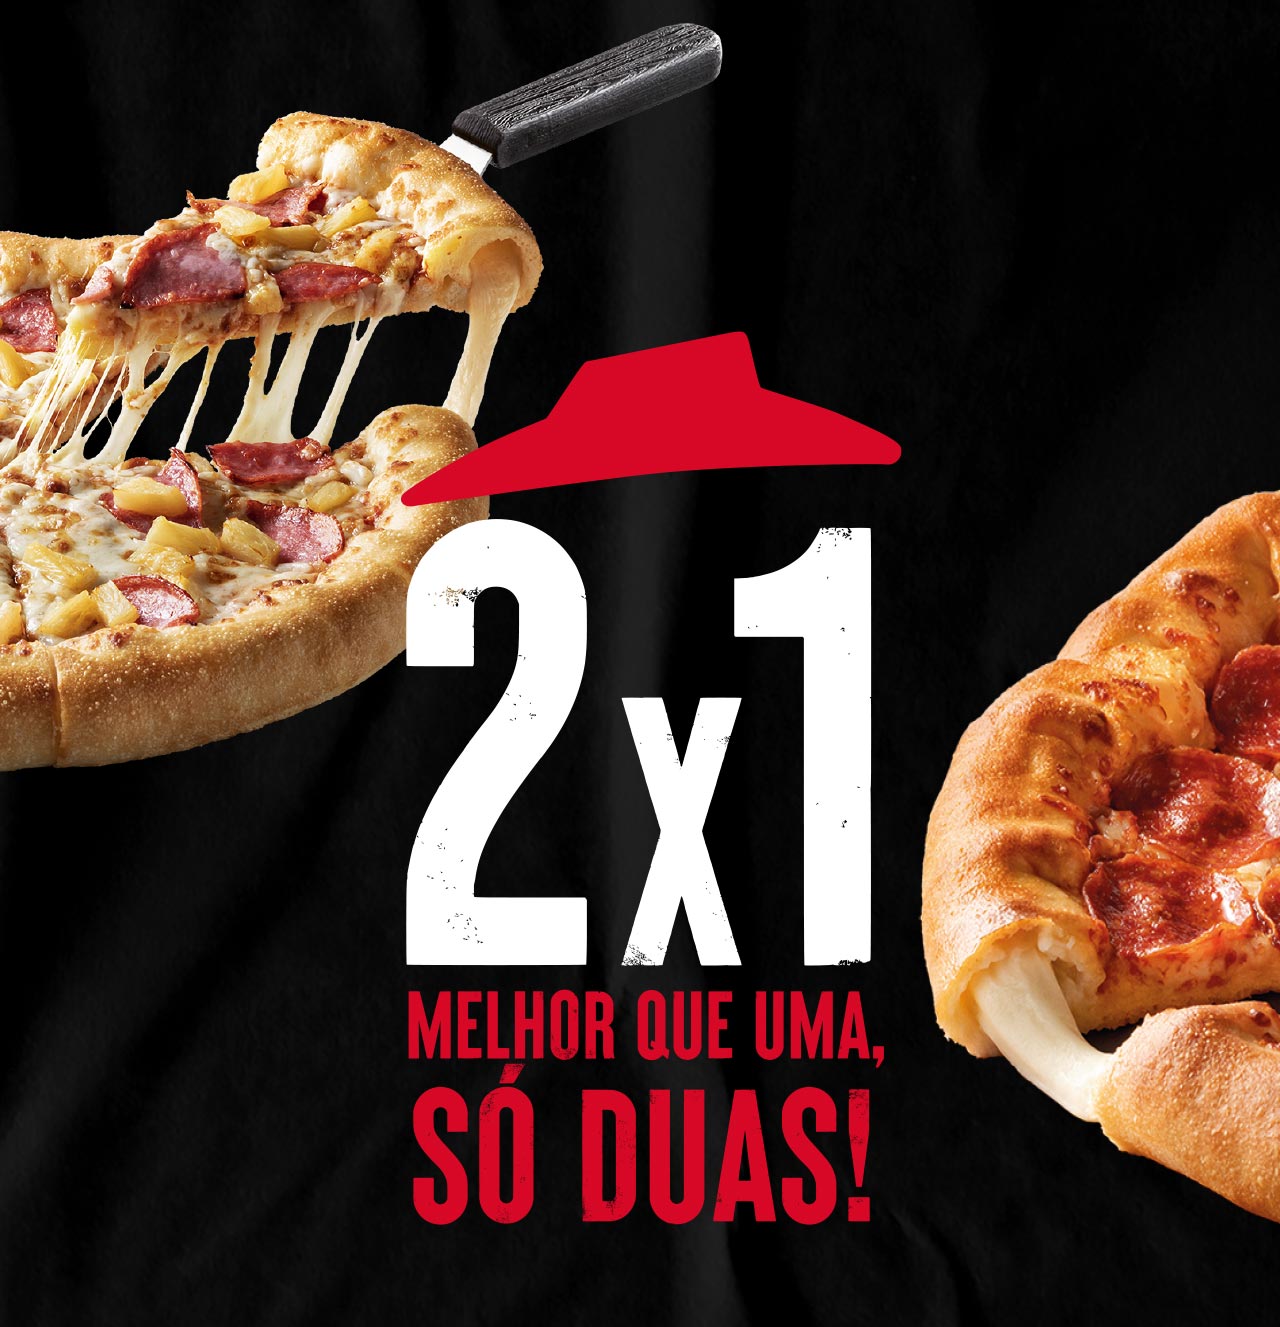 MELHOR QUE UMA SÓ DUAS! Pizza Hut Portugal